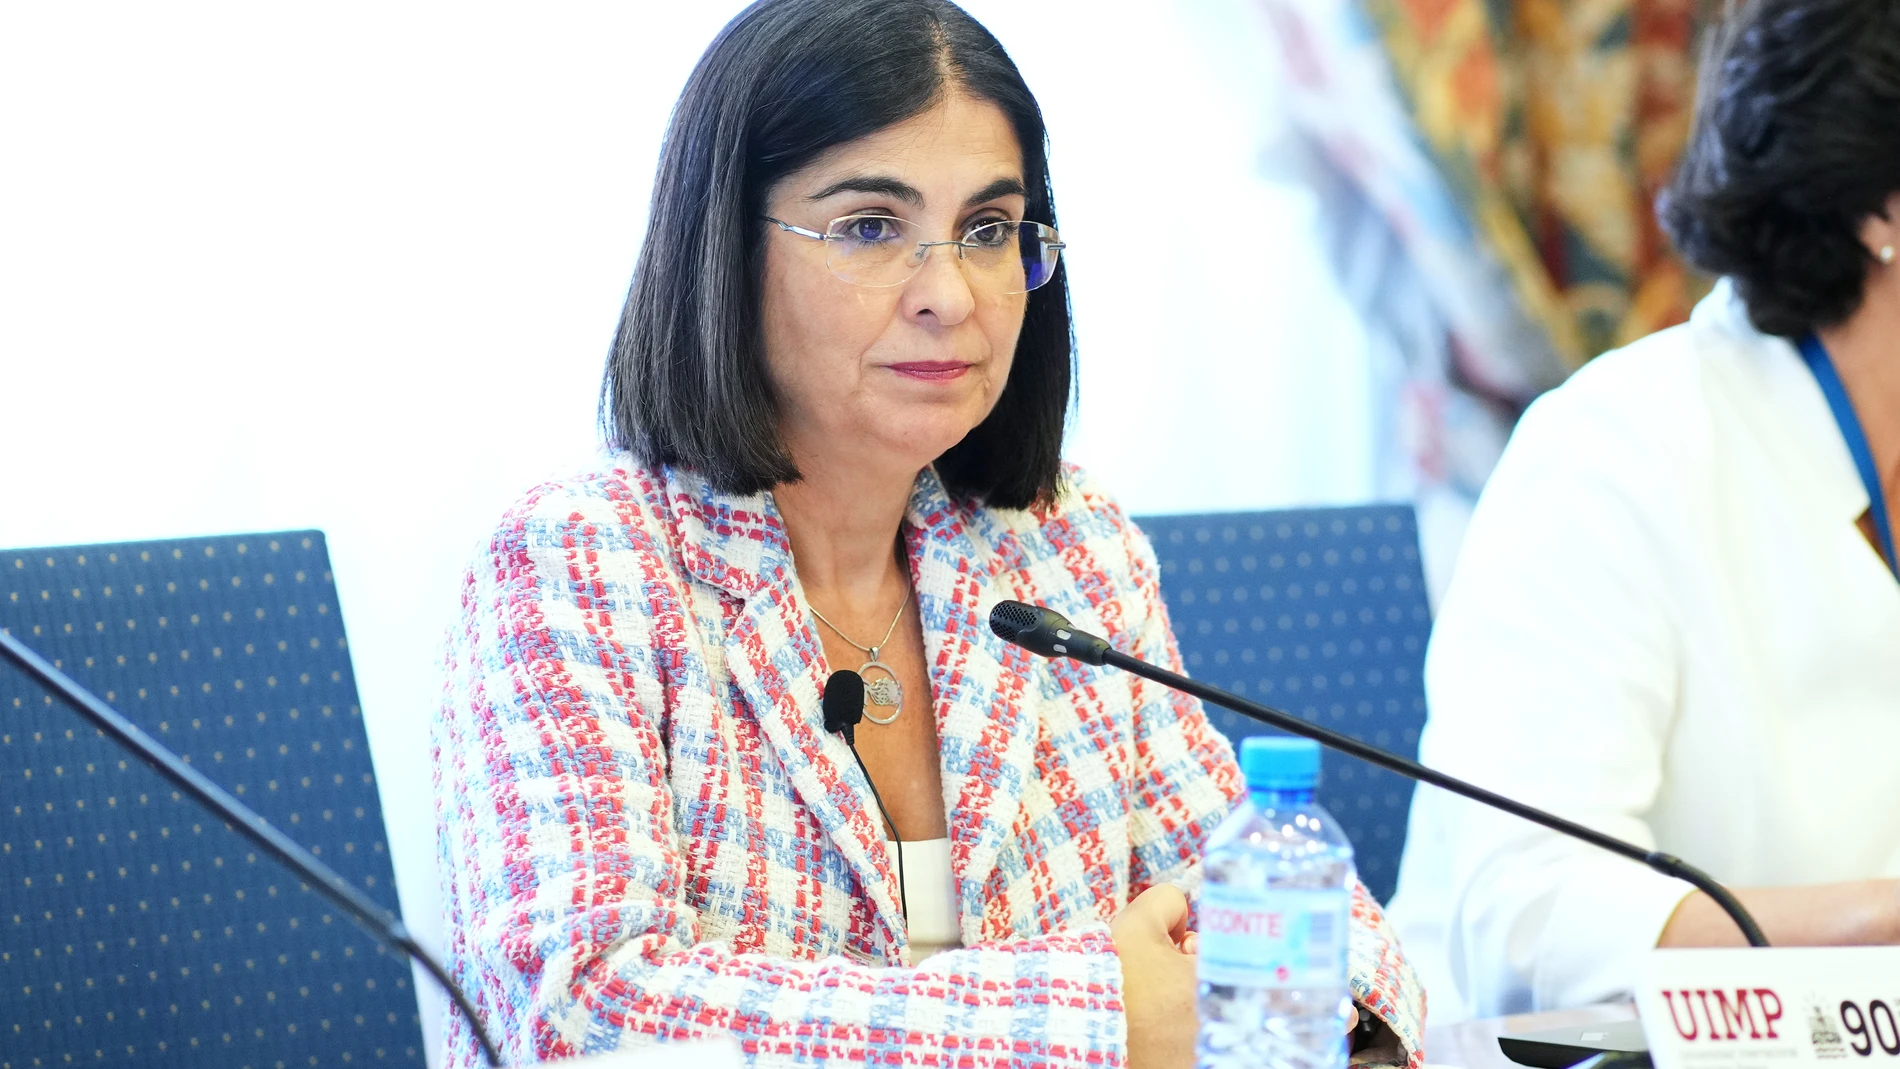 La ministra de Sanidad, Carolina Darias, durante el 'XV Encuentro Interautonómico sobre Protección Jurídica del Paciente', en el Palacio de la Magdalena, a 1 de julio de 2022, en Santander, Cantabria (España).